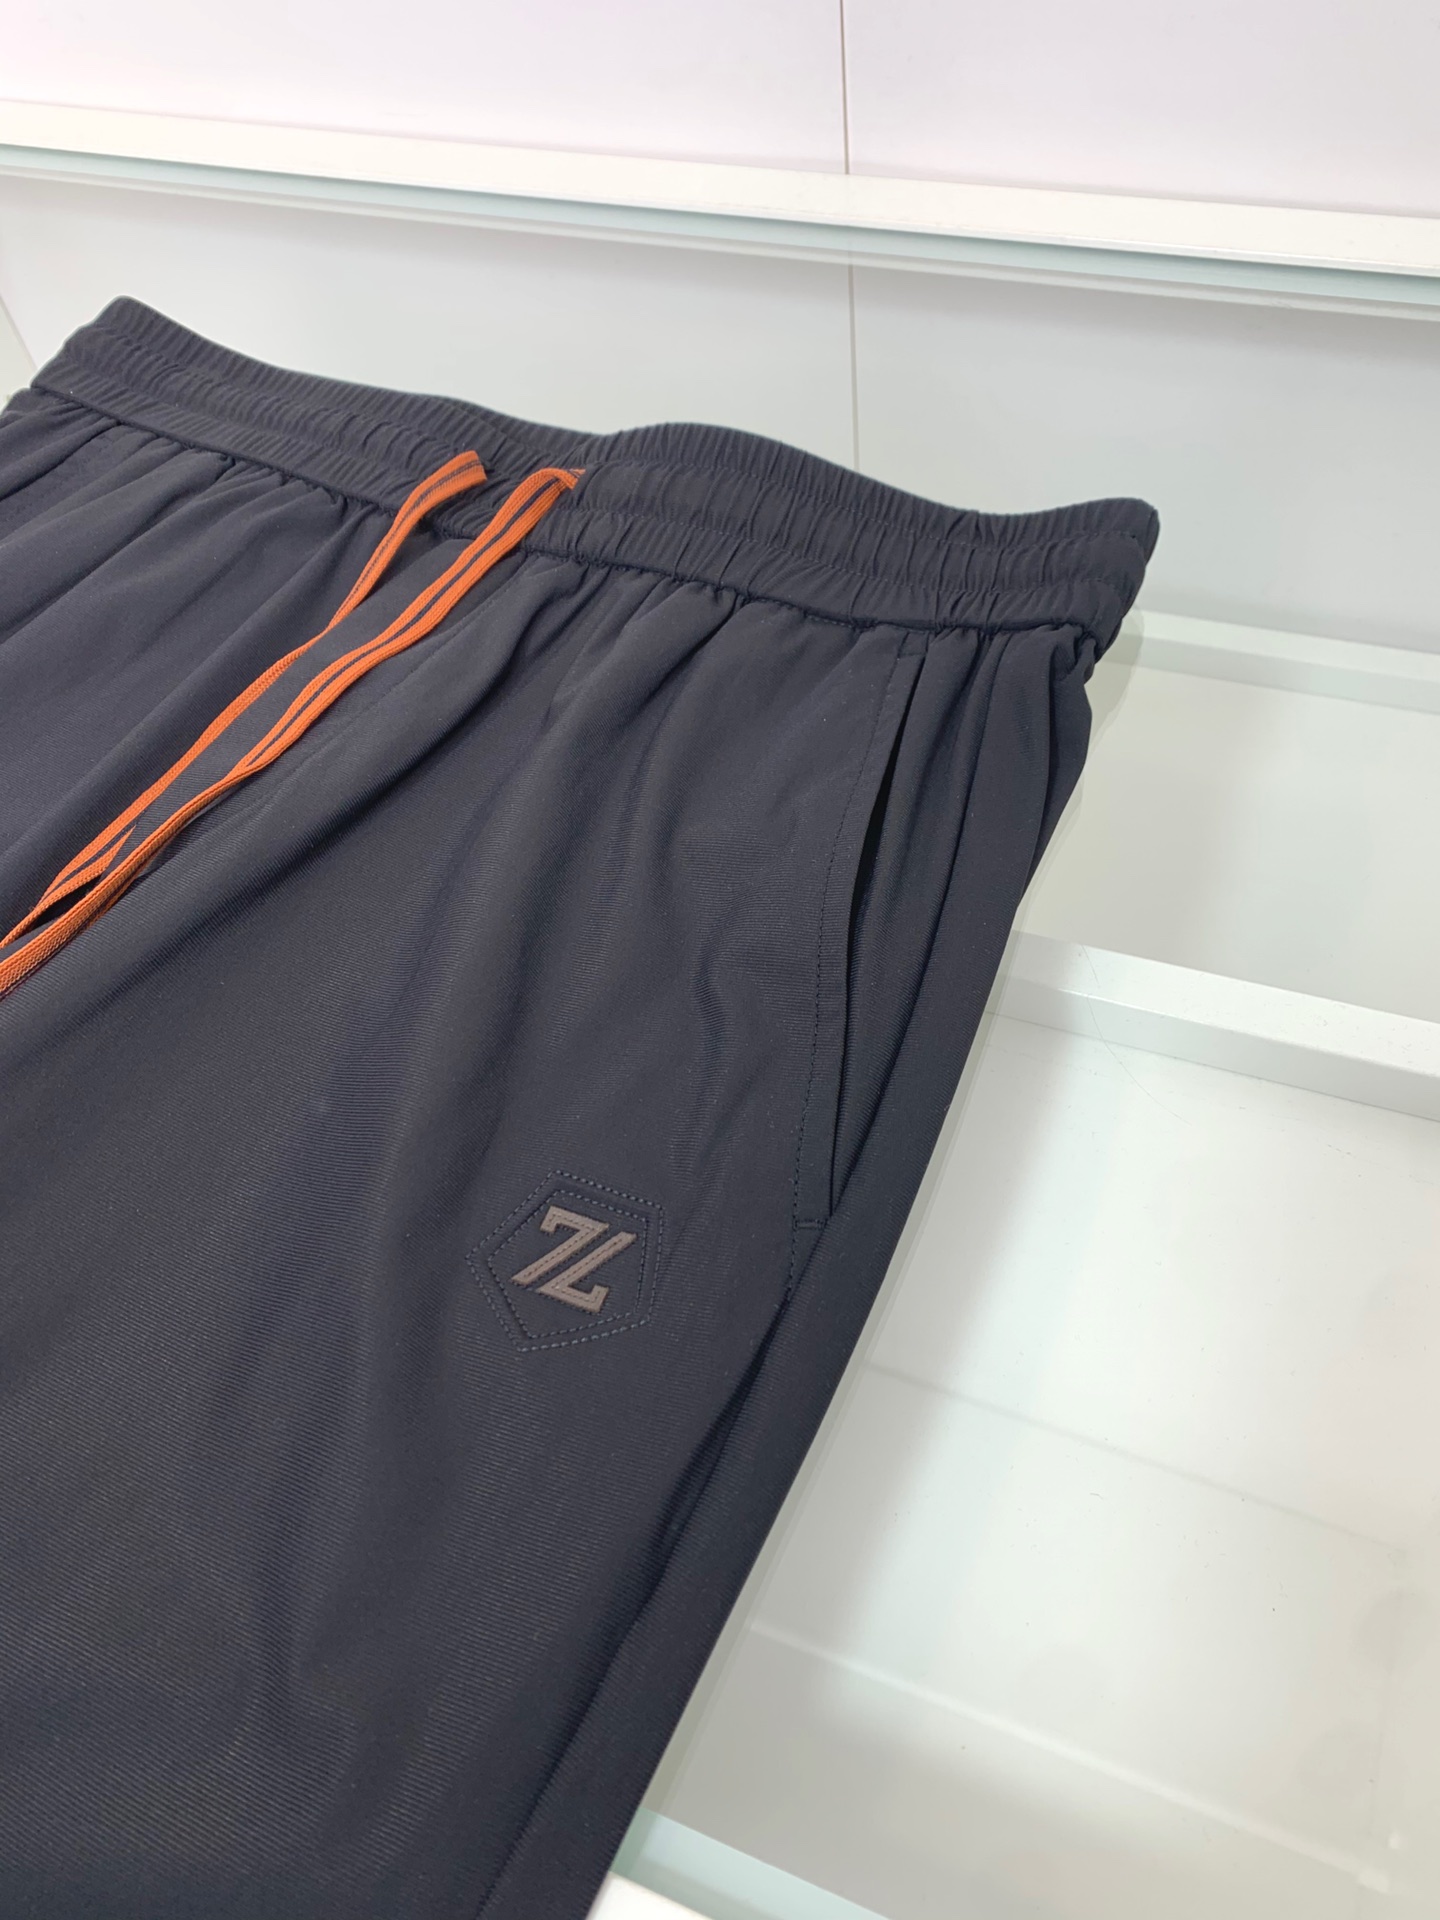 ZZ2024最新薄款抽绳休闲裤卫裤都市轻奢格调很经典的一款两侧插袋标志logo设计.口袋处品牌标志点缀.